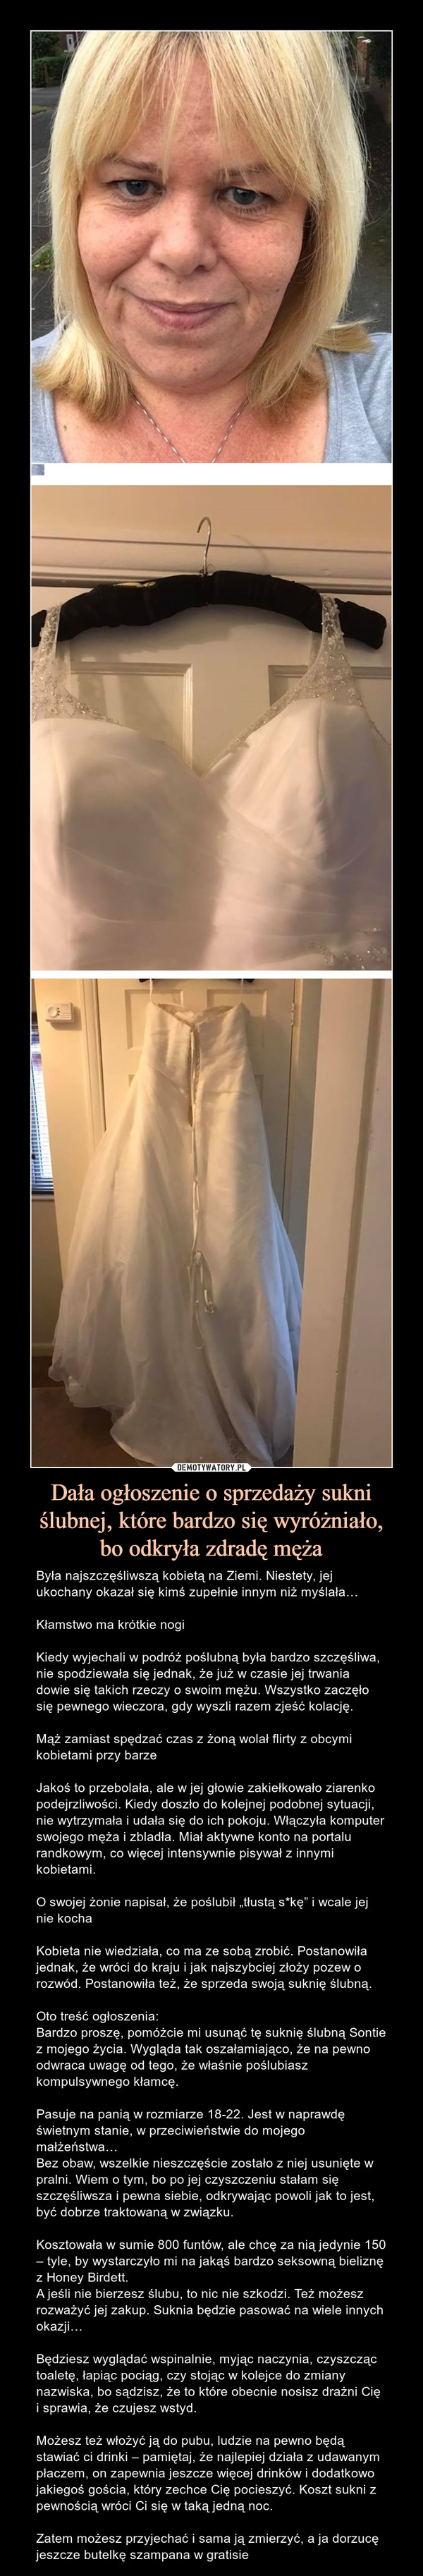 Dała ogłoszenie o sprzedaży sukni ślubnej, które bardzo się wyróżniało,
bo odkryła zdradę męża